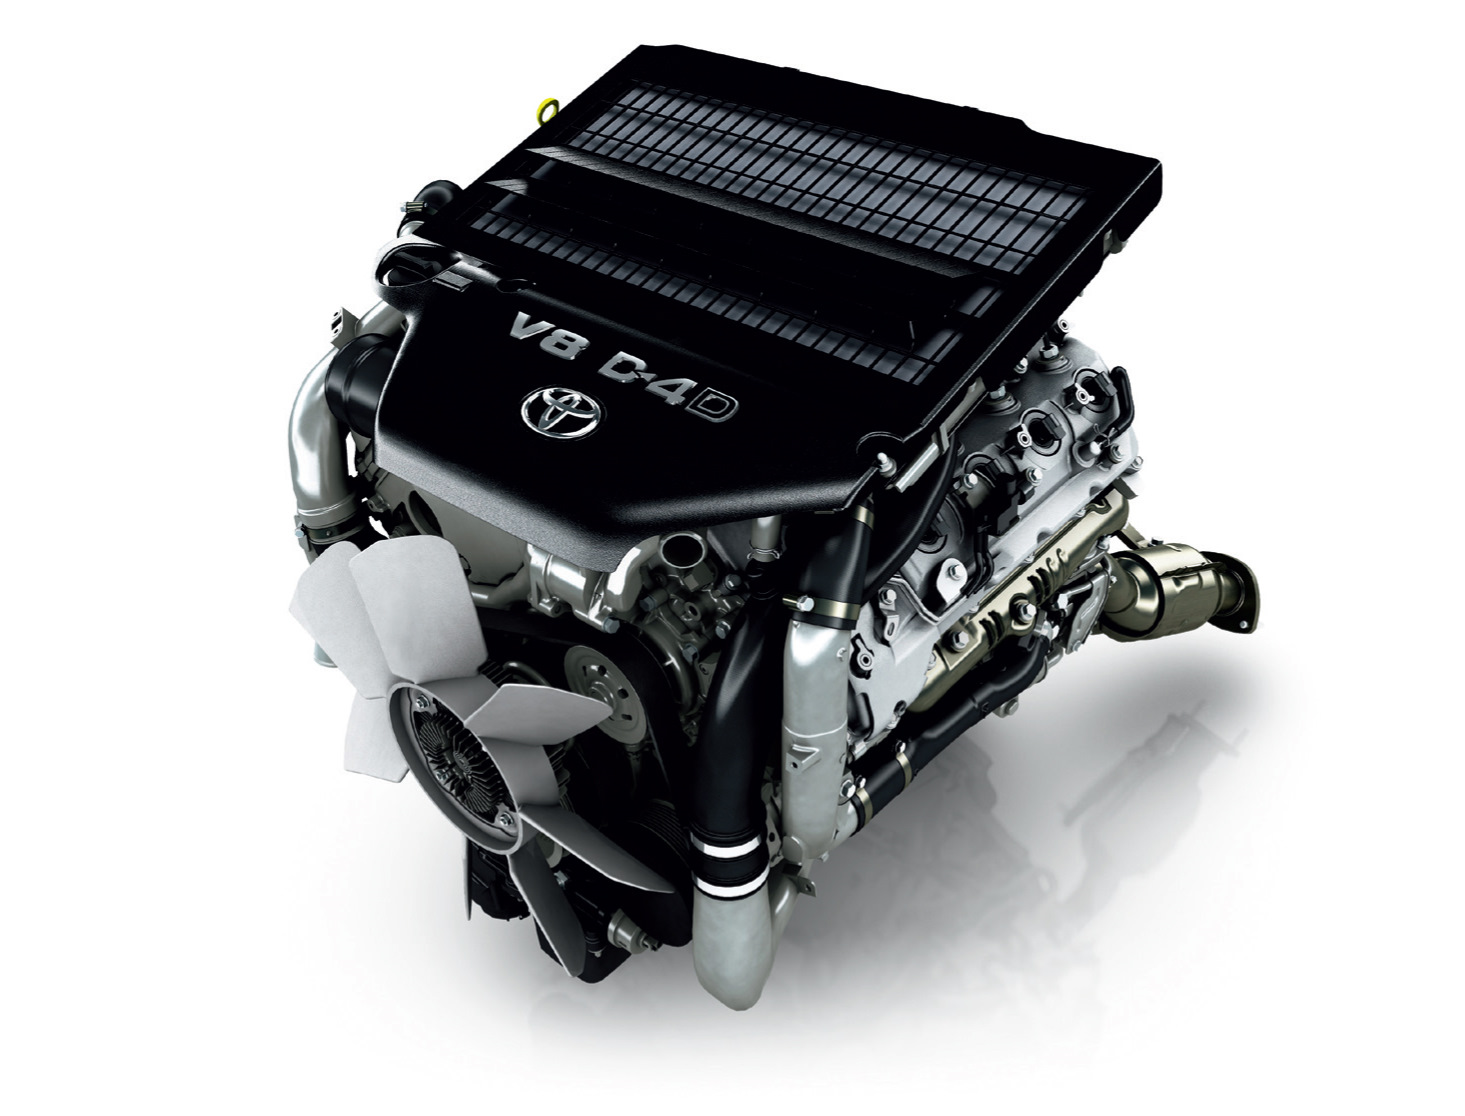 Масло в двигатель Toyota 1VD‑FTV: объем, марки, допуски, вязкость